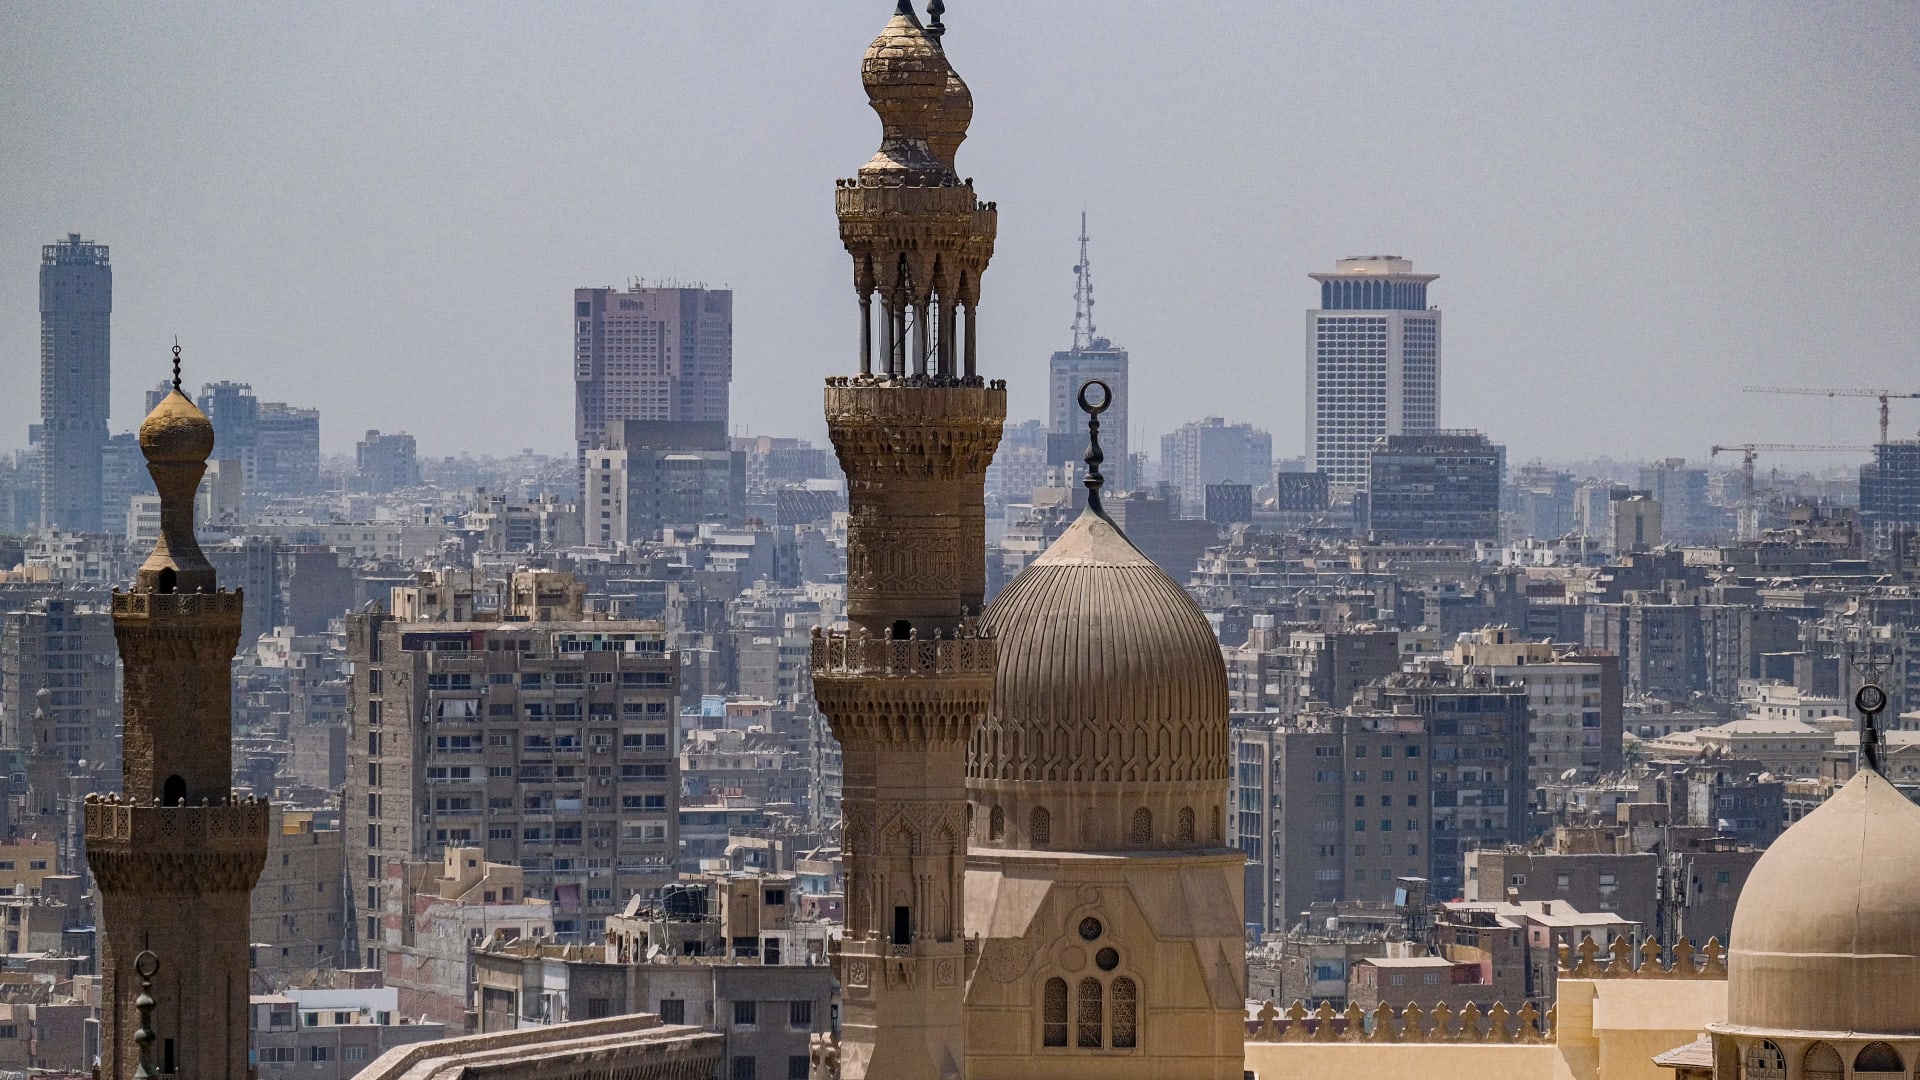 صورة ارشيفية عامة من العاصمة المصرية القاهرة